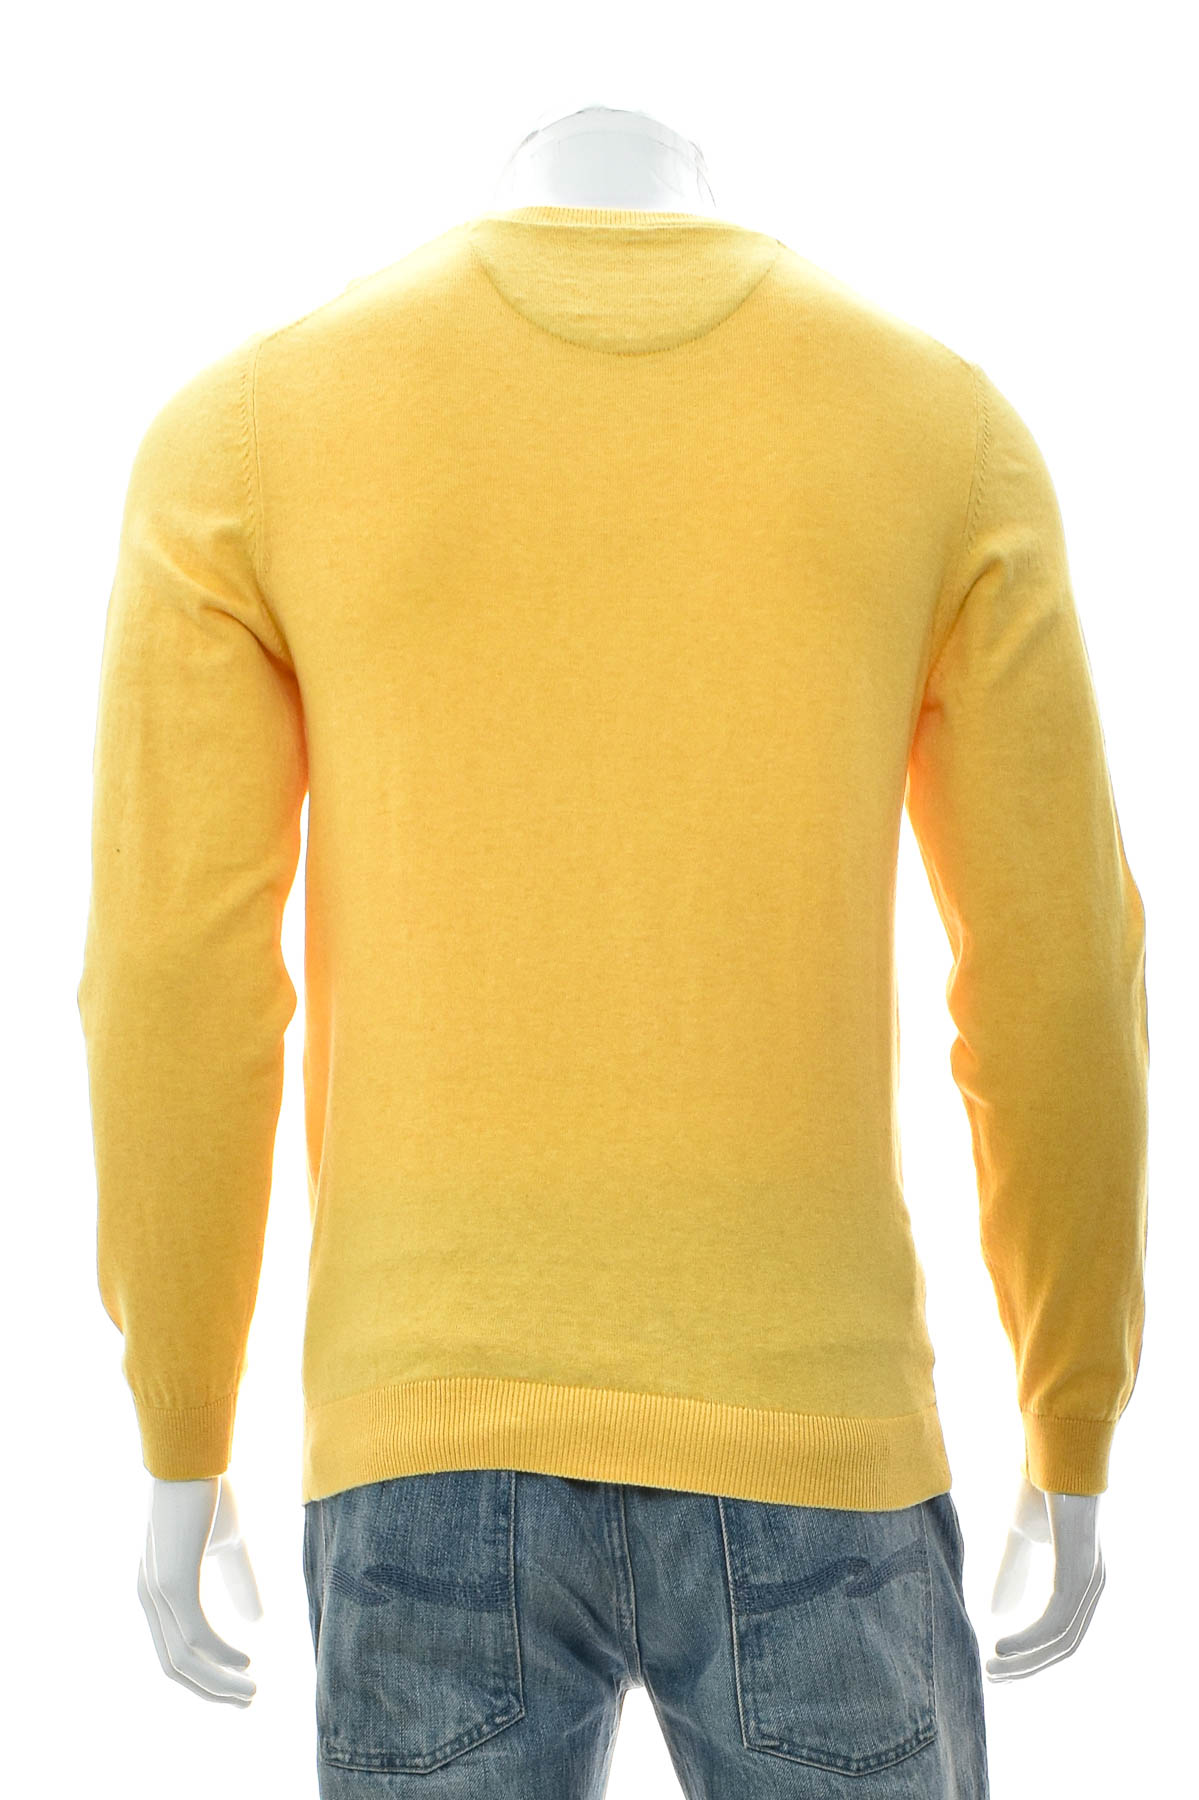 Men's sweater - Johann Konen - 1